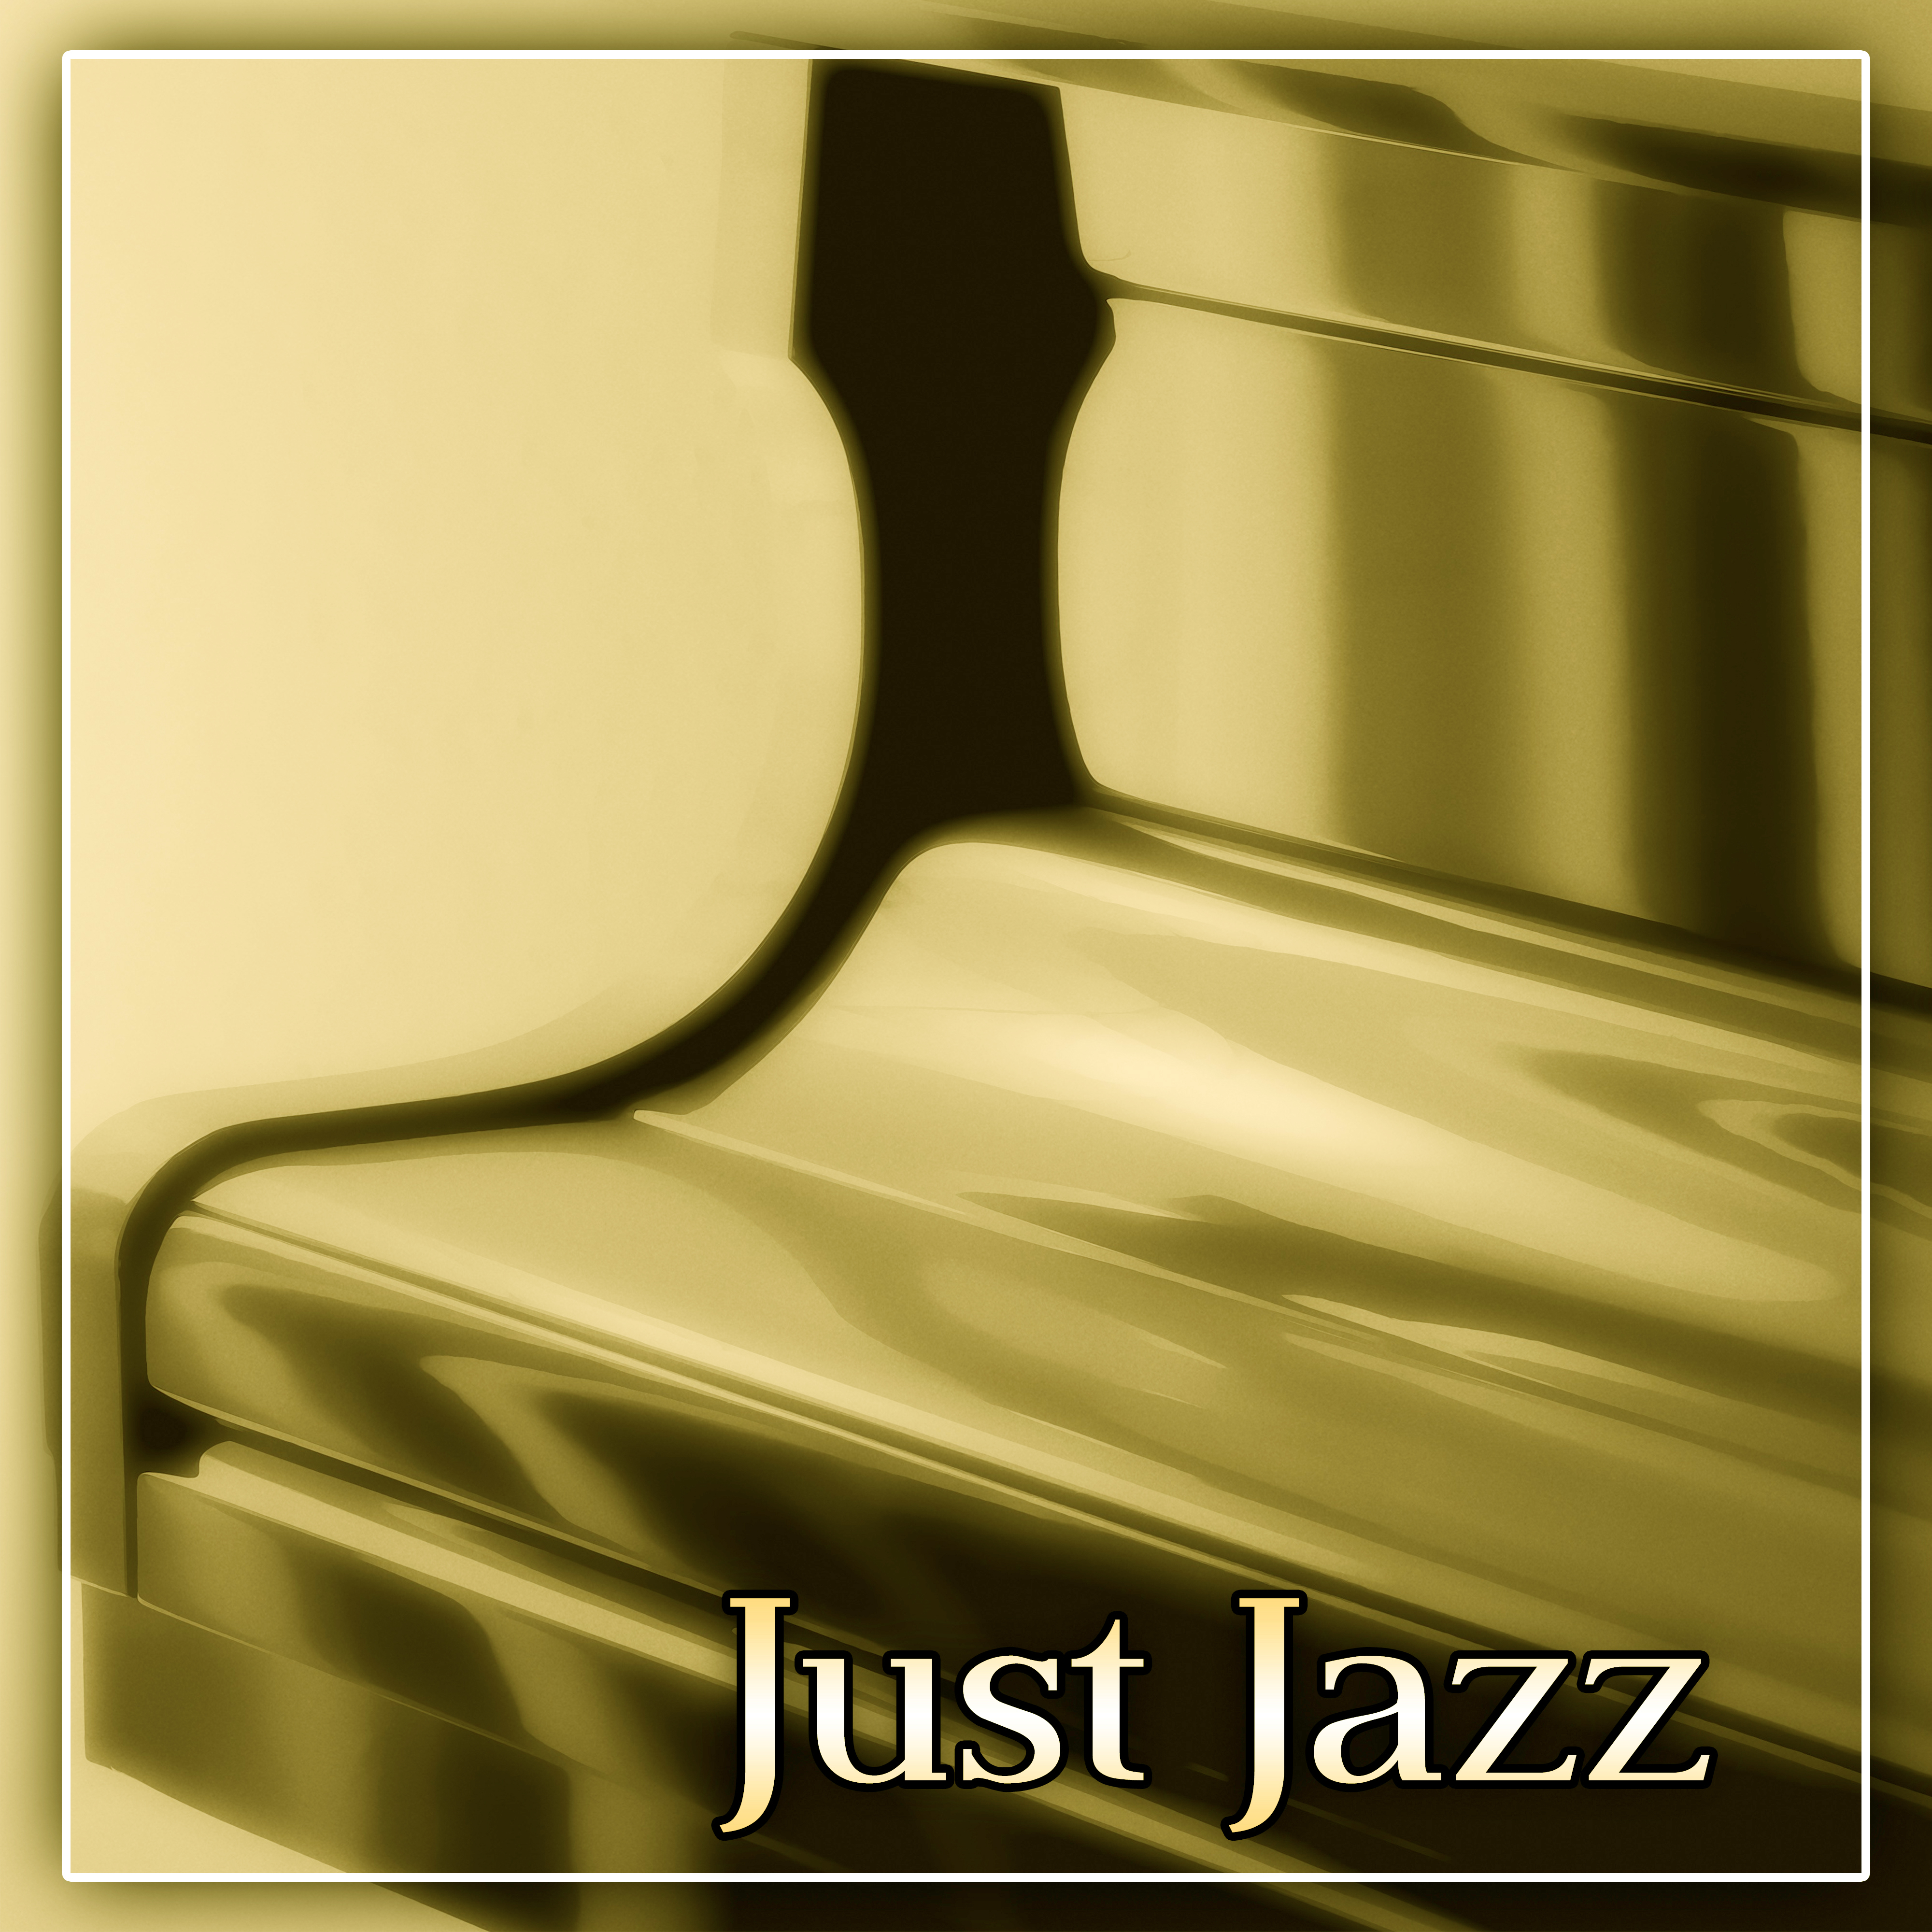 Just Jazz – Brilliant Sounds of Jazz,  Best Jazz Music for Restaurant, Jazz Club & Jazz Bar, Instrumental Piano Sounds for Bohema